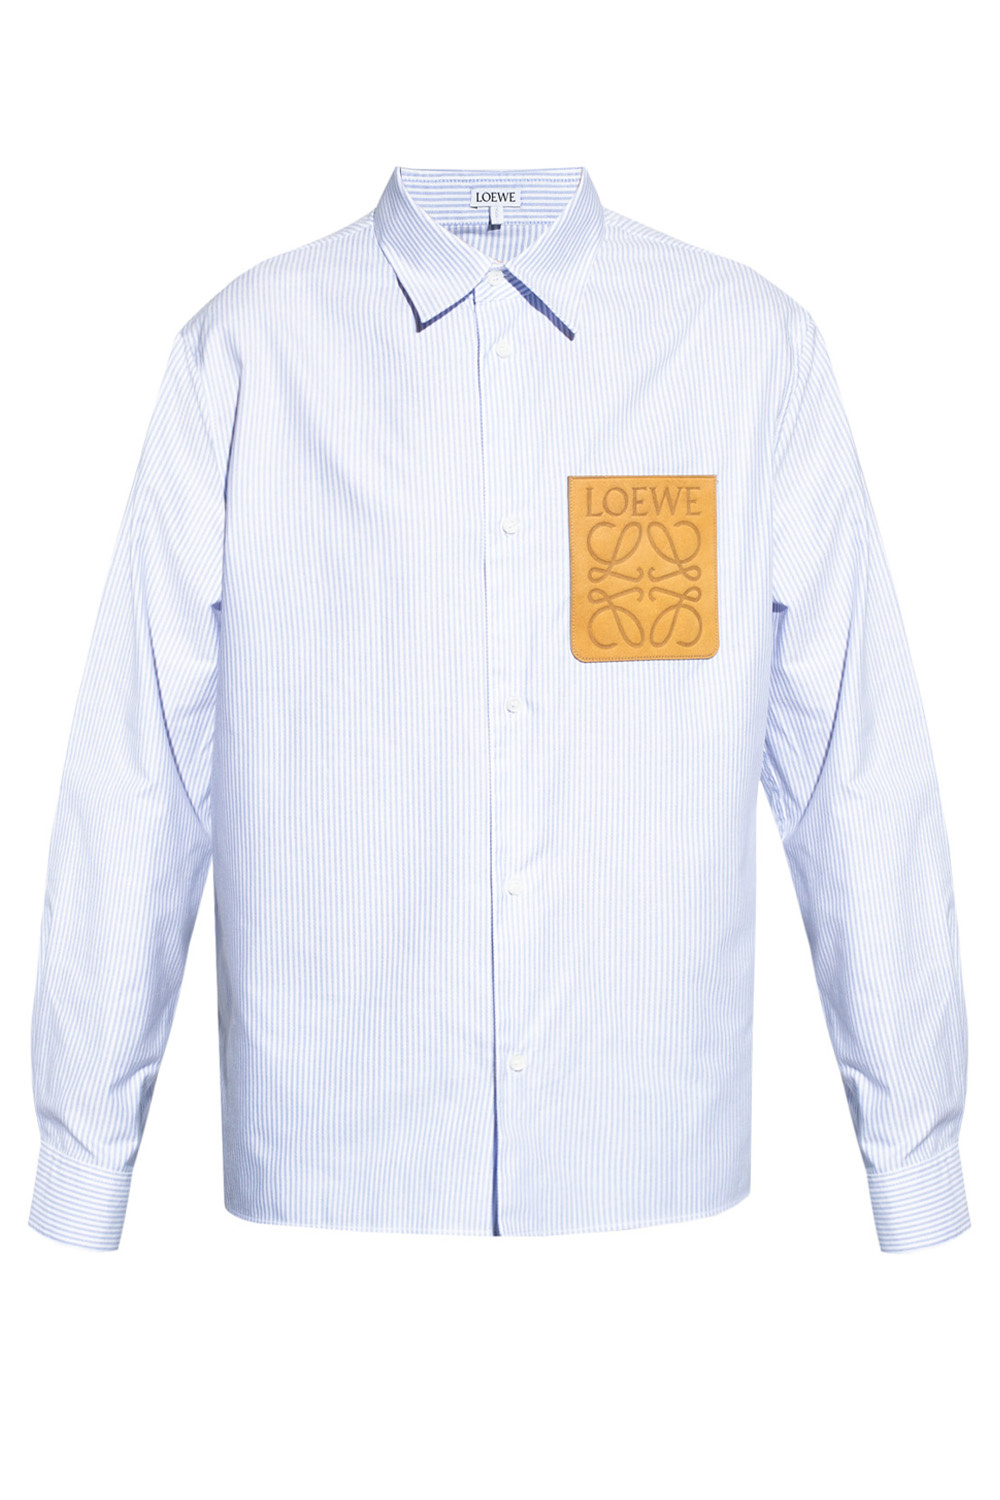 Loewe Shirt with logo | Men's Clothing | Vitkac